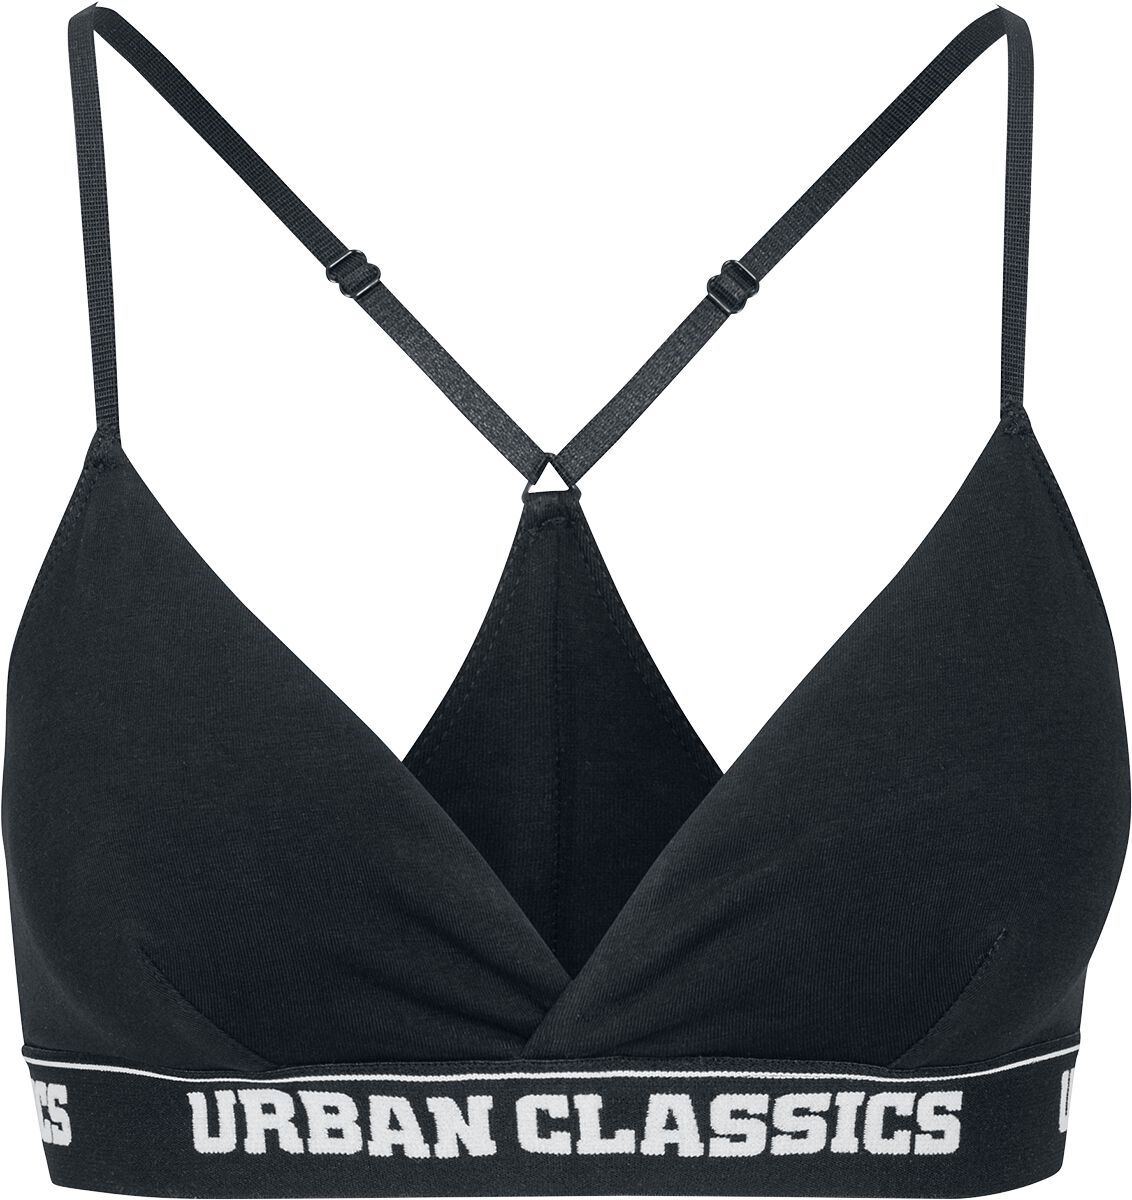 Bustier de Urban Classics - Soutien-Gorge Triangle Avec Logo - XS à 5XL - pour Femme - noir